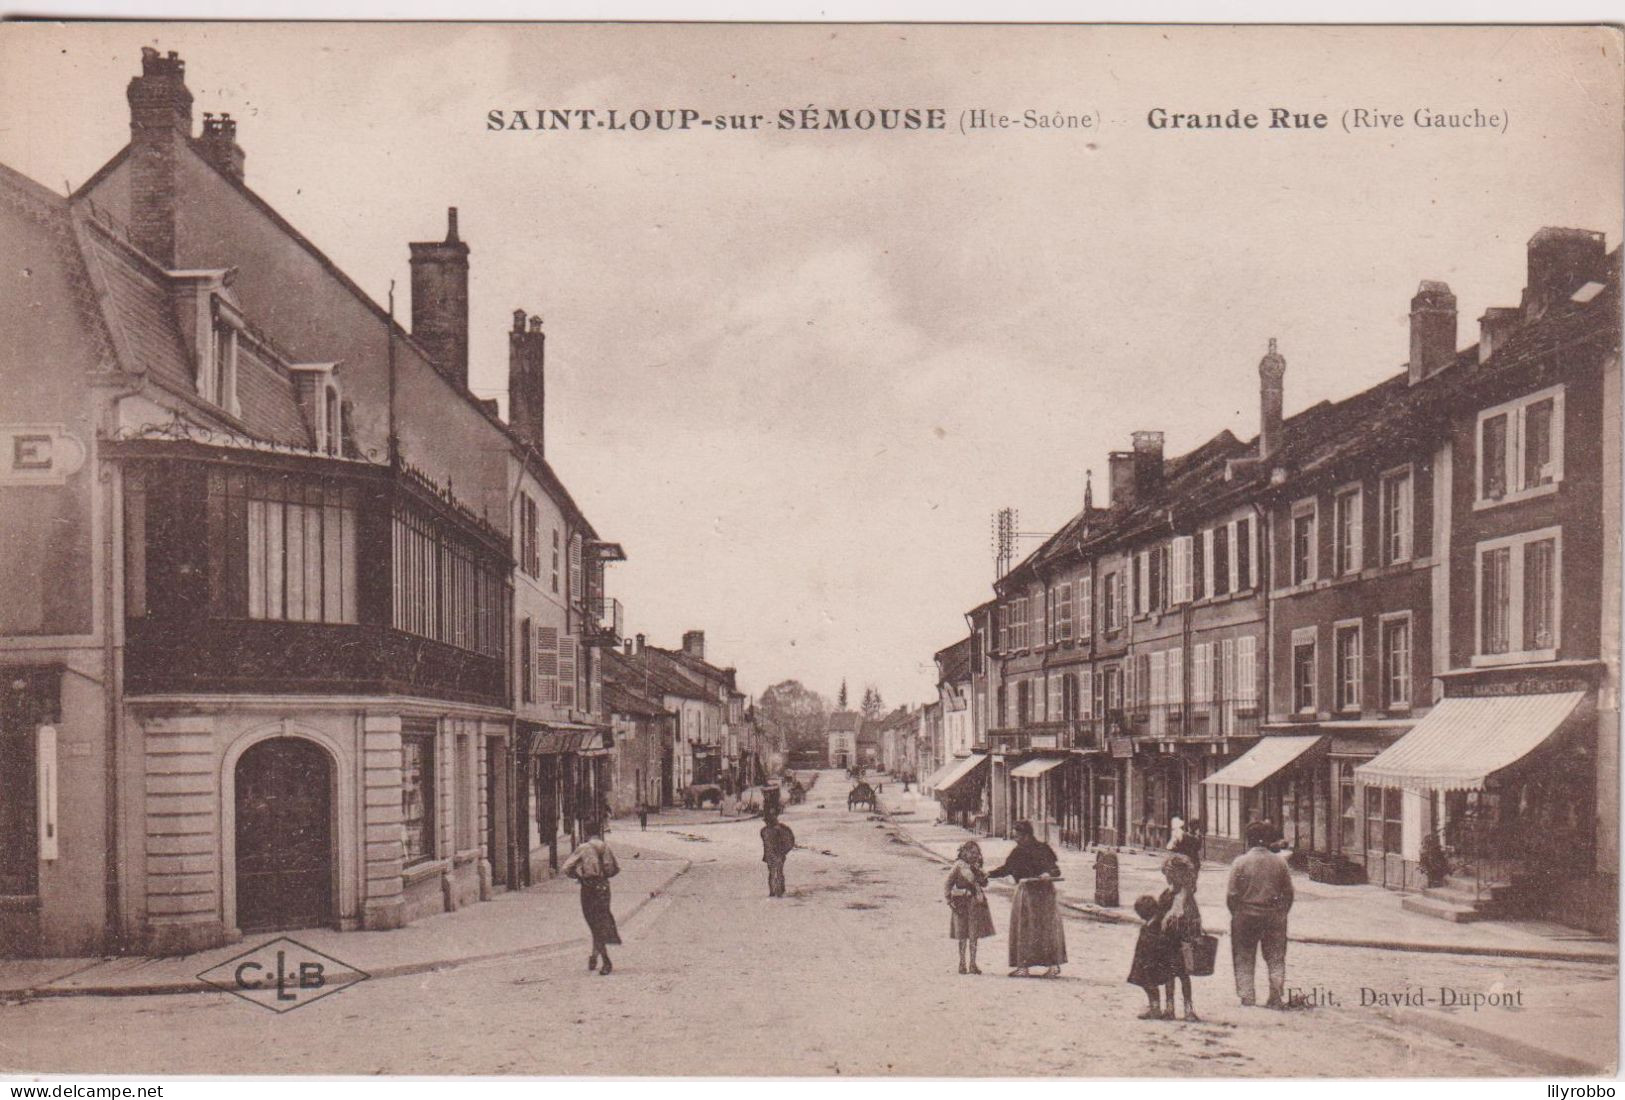 FRANCE - SAINT-LOOP-sur-SEMOUSE.  Grand Rue (rive Gauche) - Saint-Loup-sur-Semouse